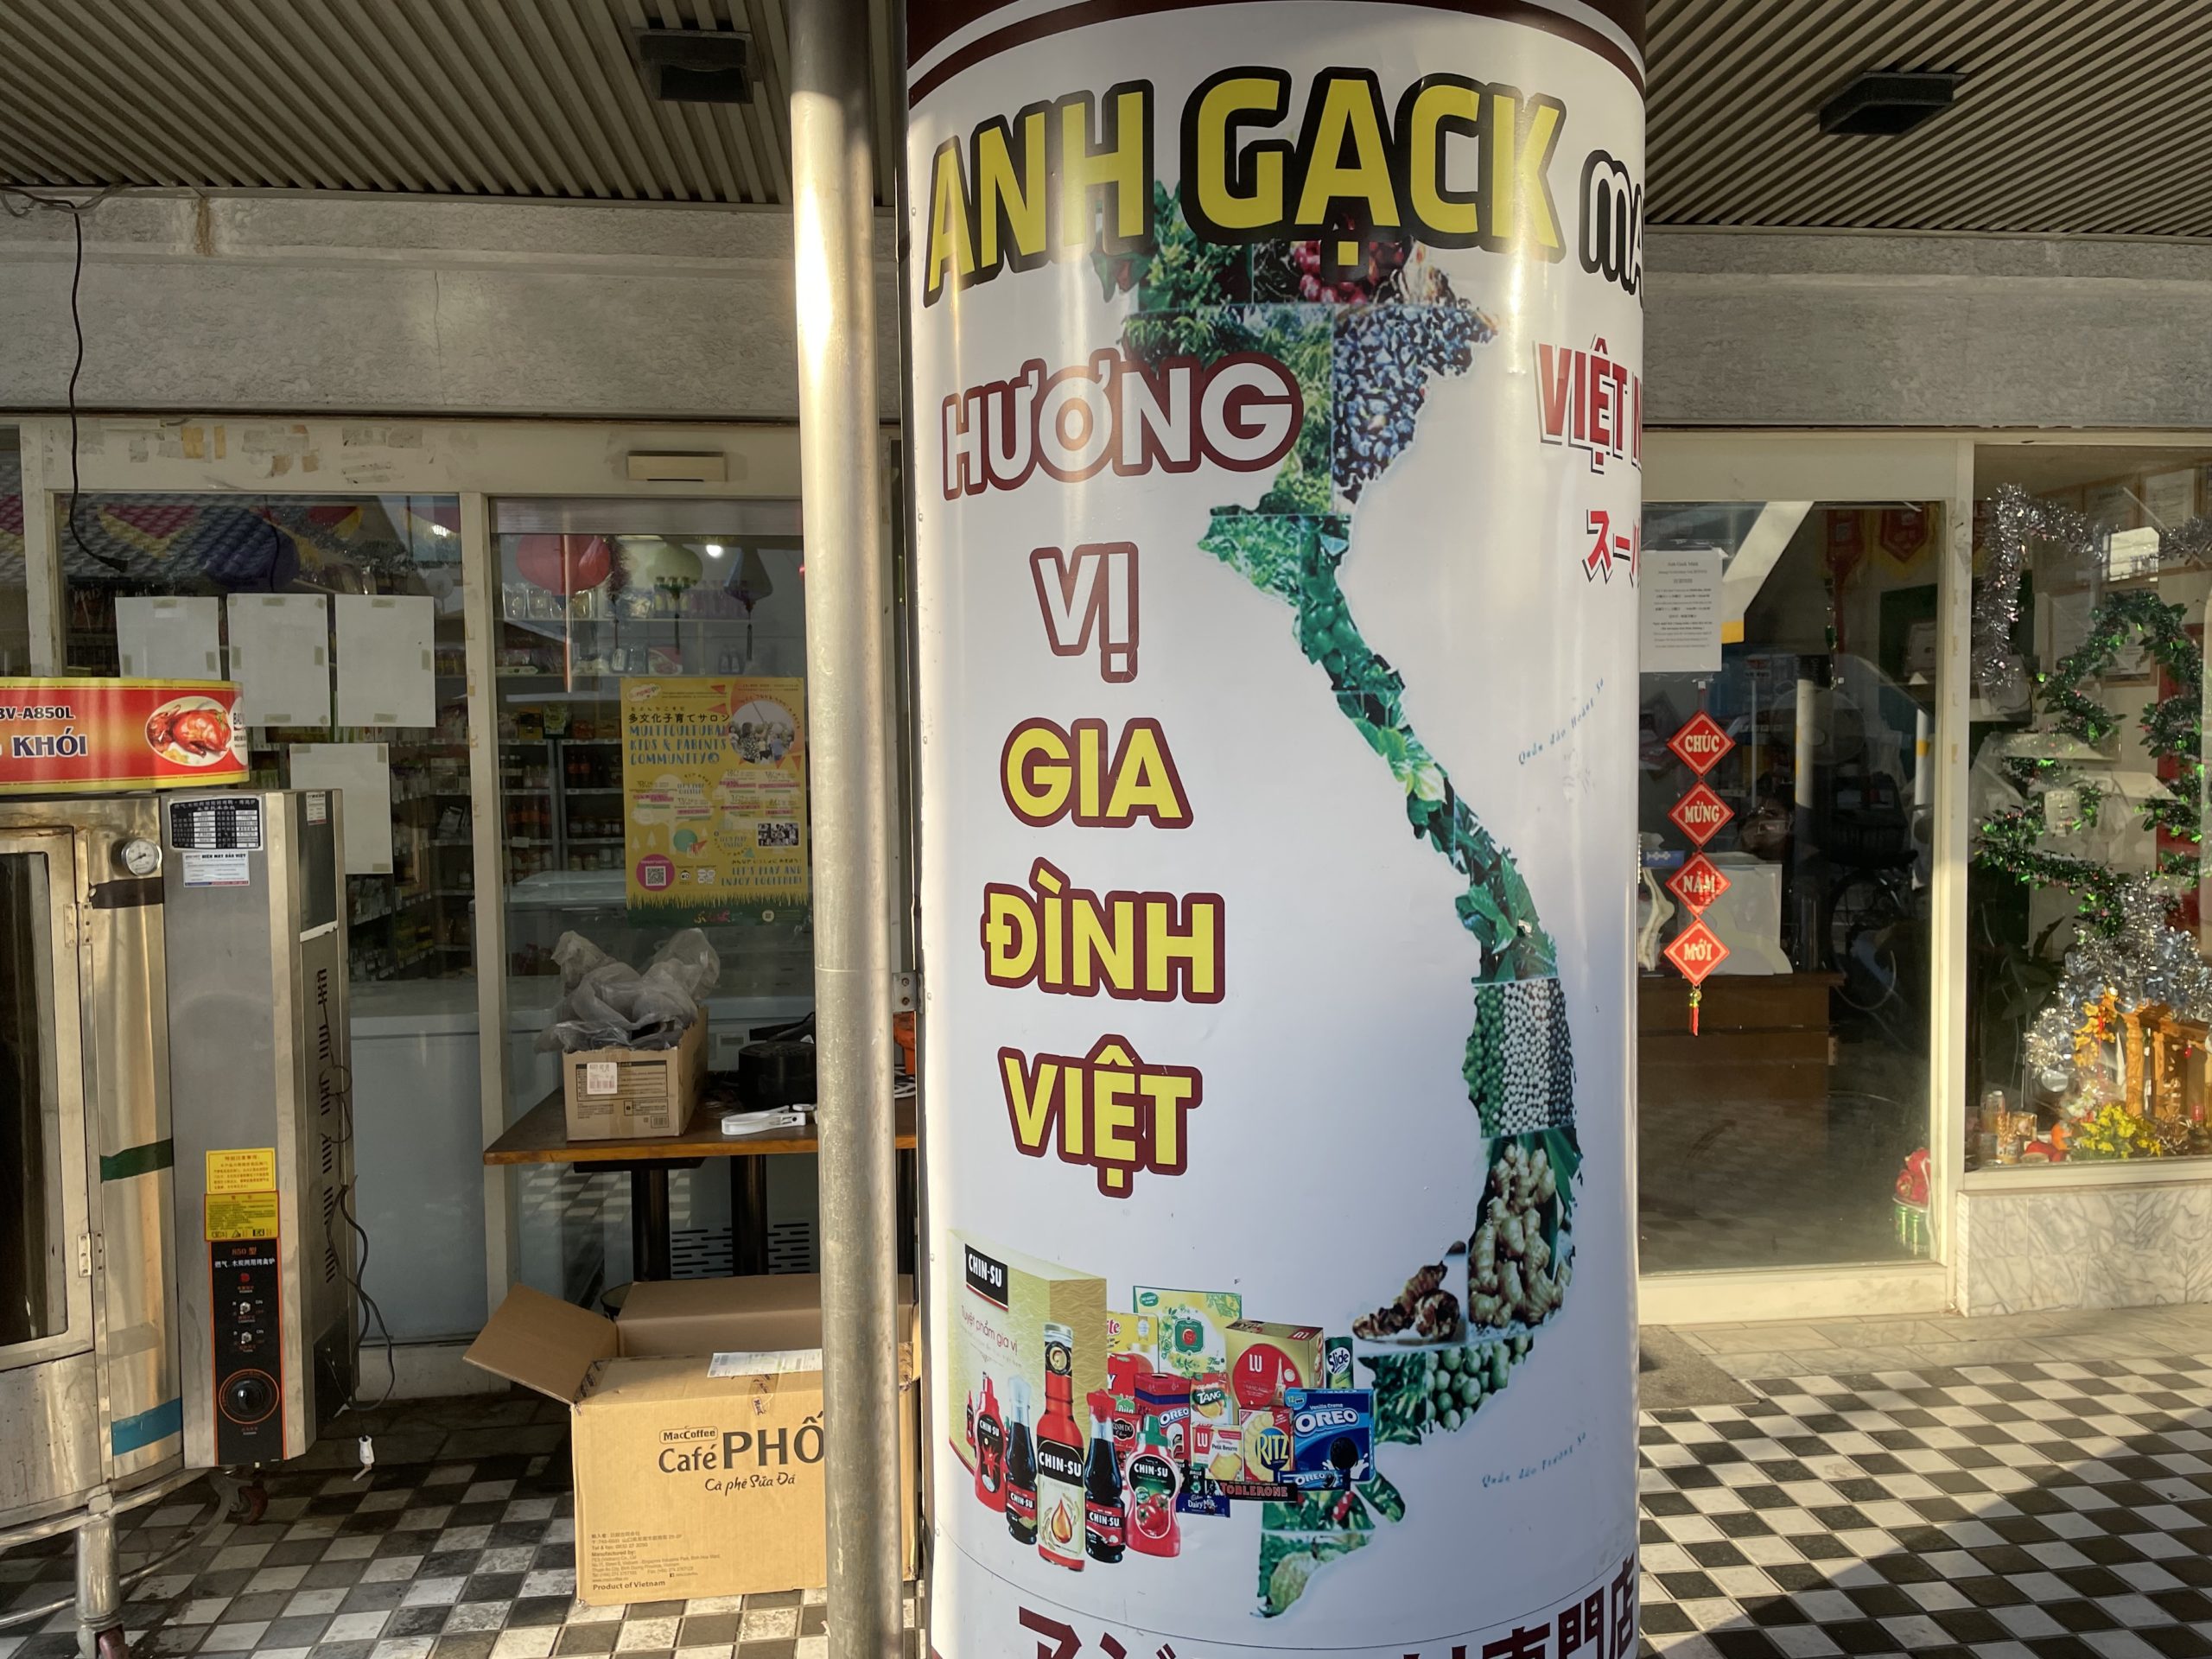 【愛知県豊田市】ベトナム食材店「Anh Gạck Mark Hương Vị Gia Đình Việt Toyotashi」